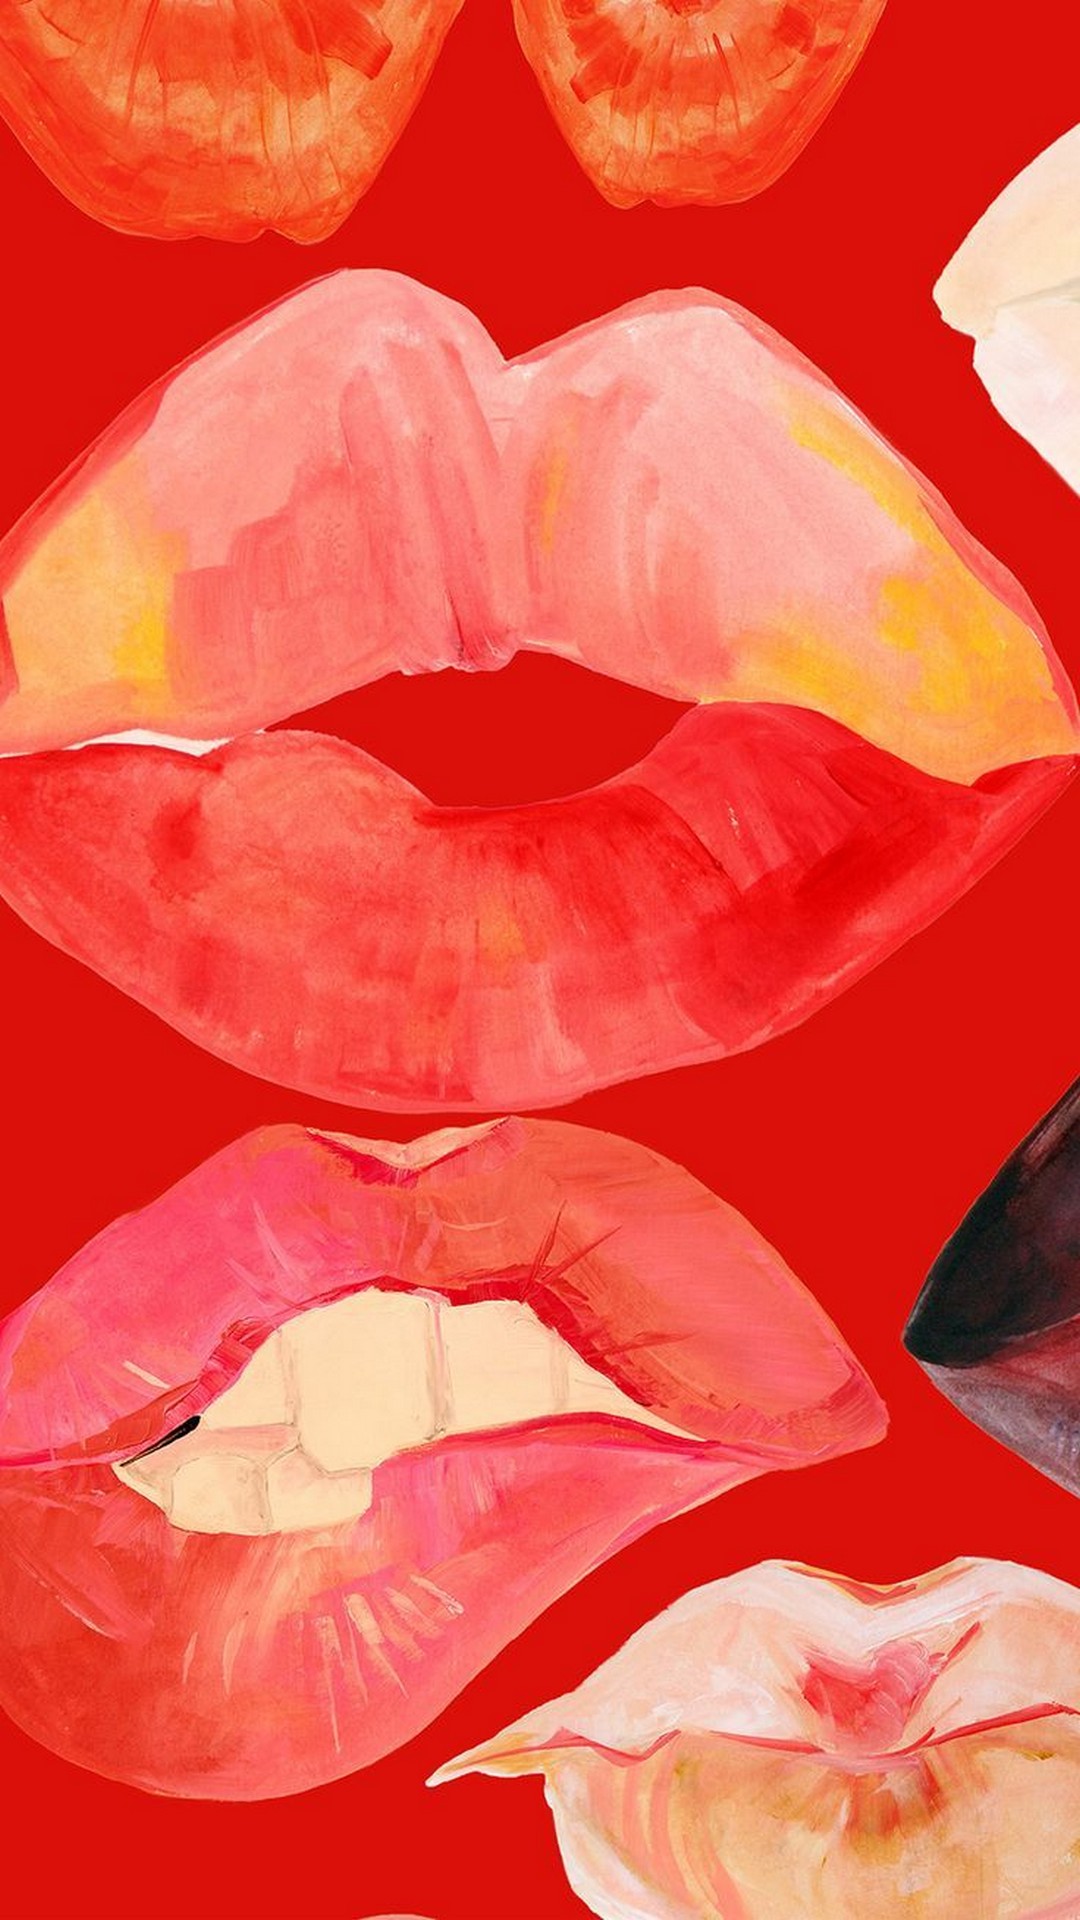 키스 벽지,말뿐인,빨간,분홍,입,수채화 물감